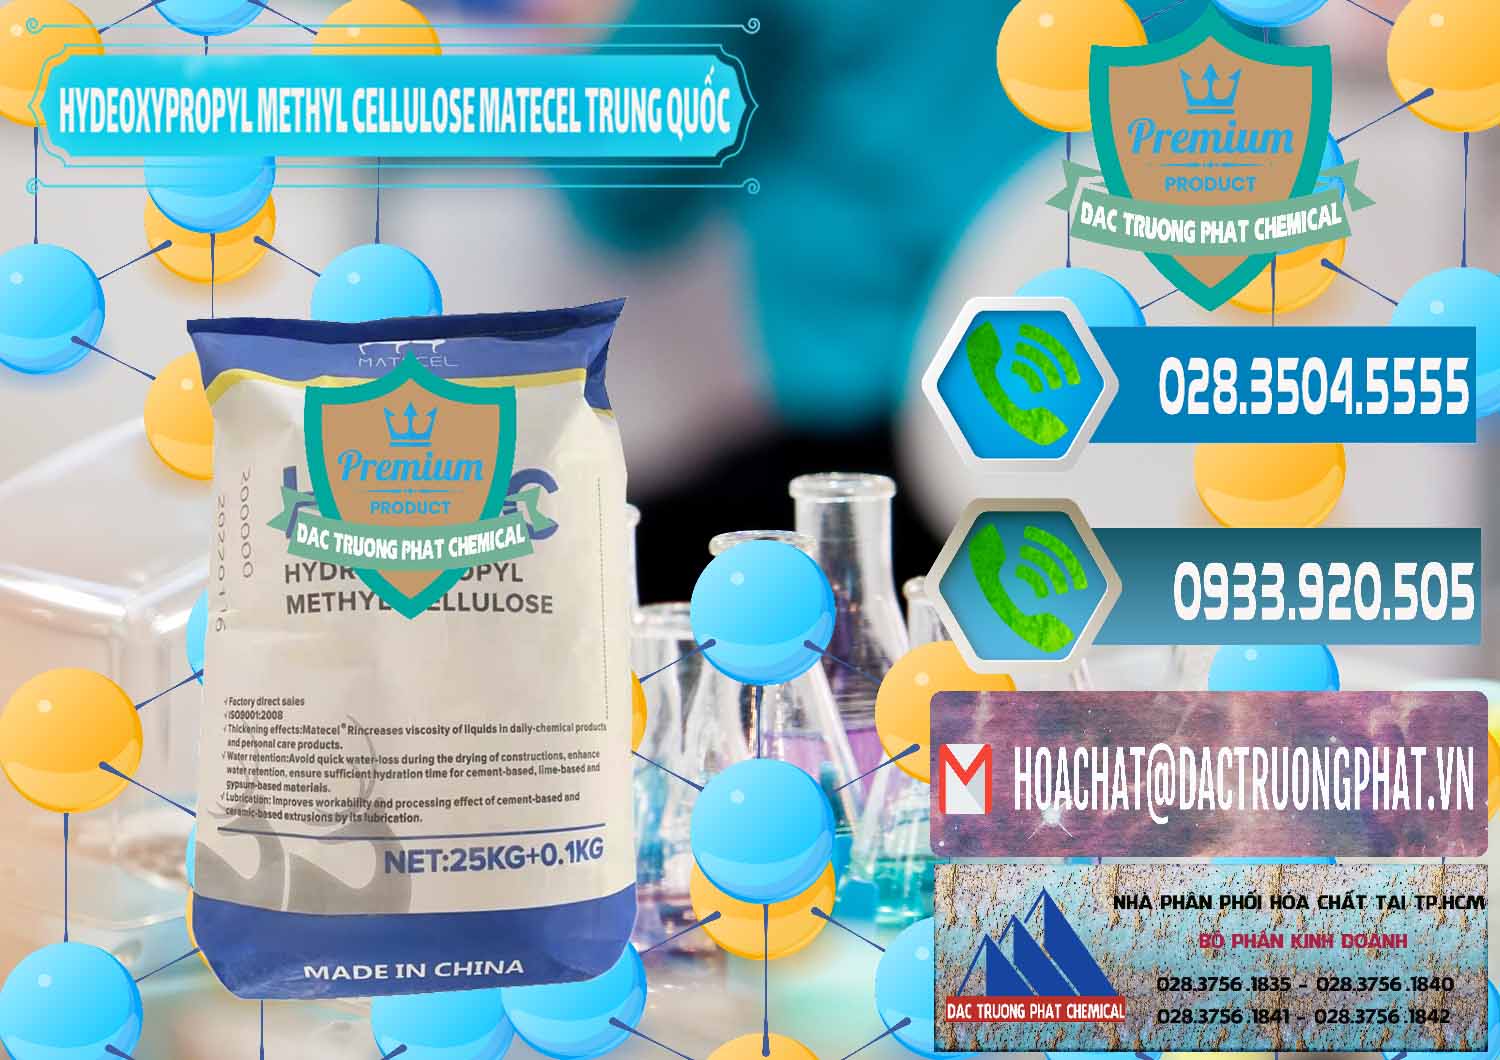 Cung ứng & bán Chất Tạo Đặc HPMC - Hydroxypropyl Methyl Cellulose Matecel Trung Quốc China - 0396 - Đơn vị chuyên bán và phân phối hóa chất tại TP.HCM - congtyhoachat.net